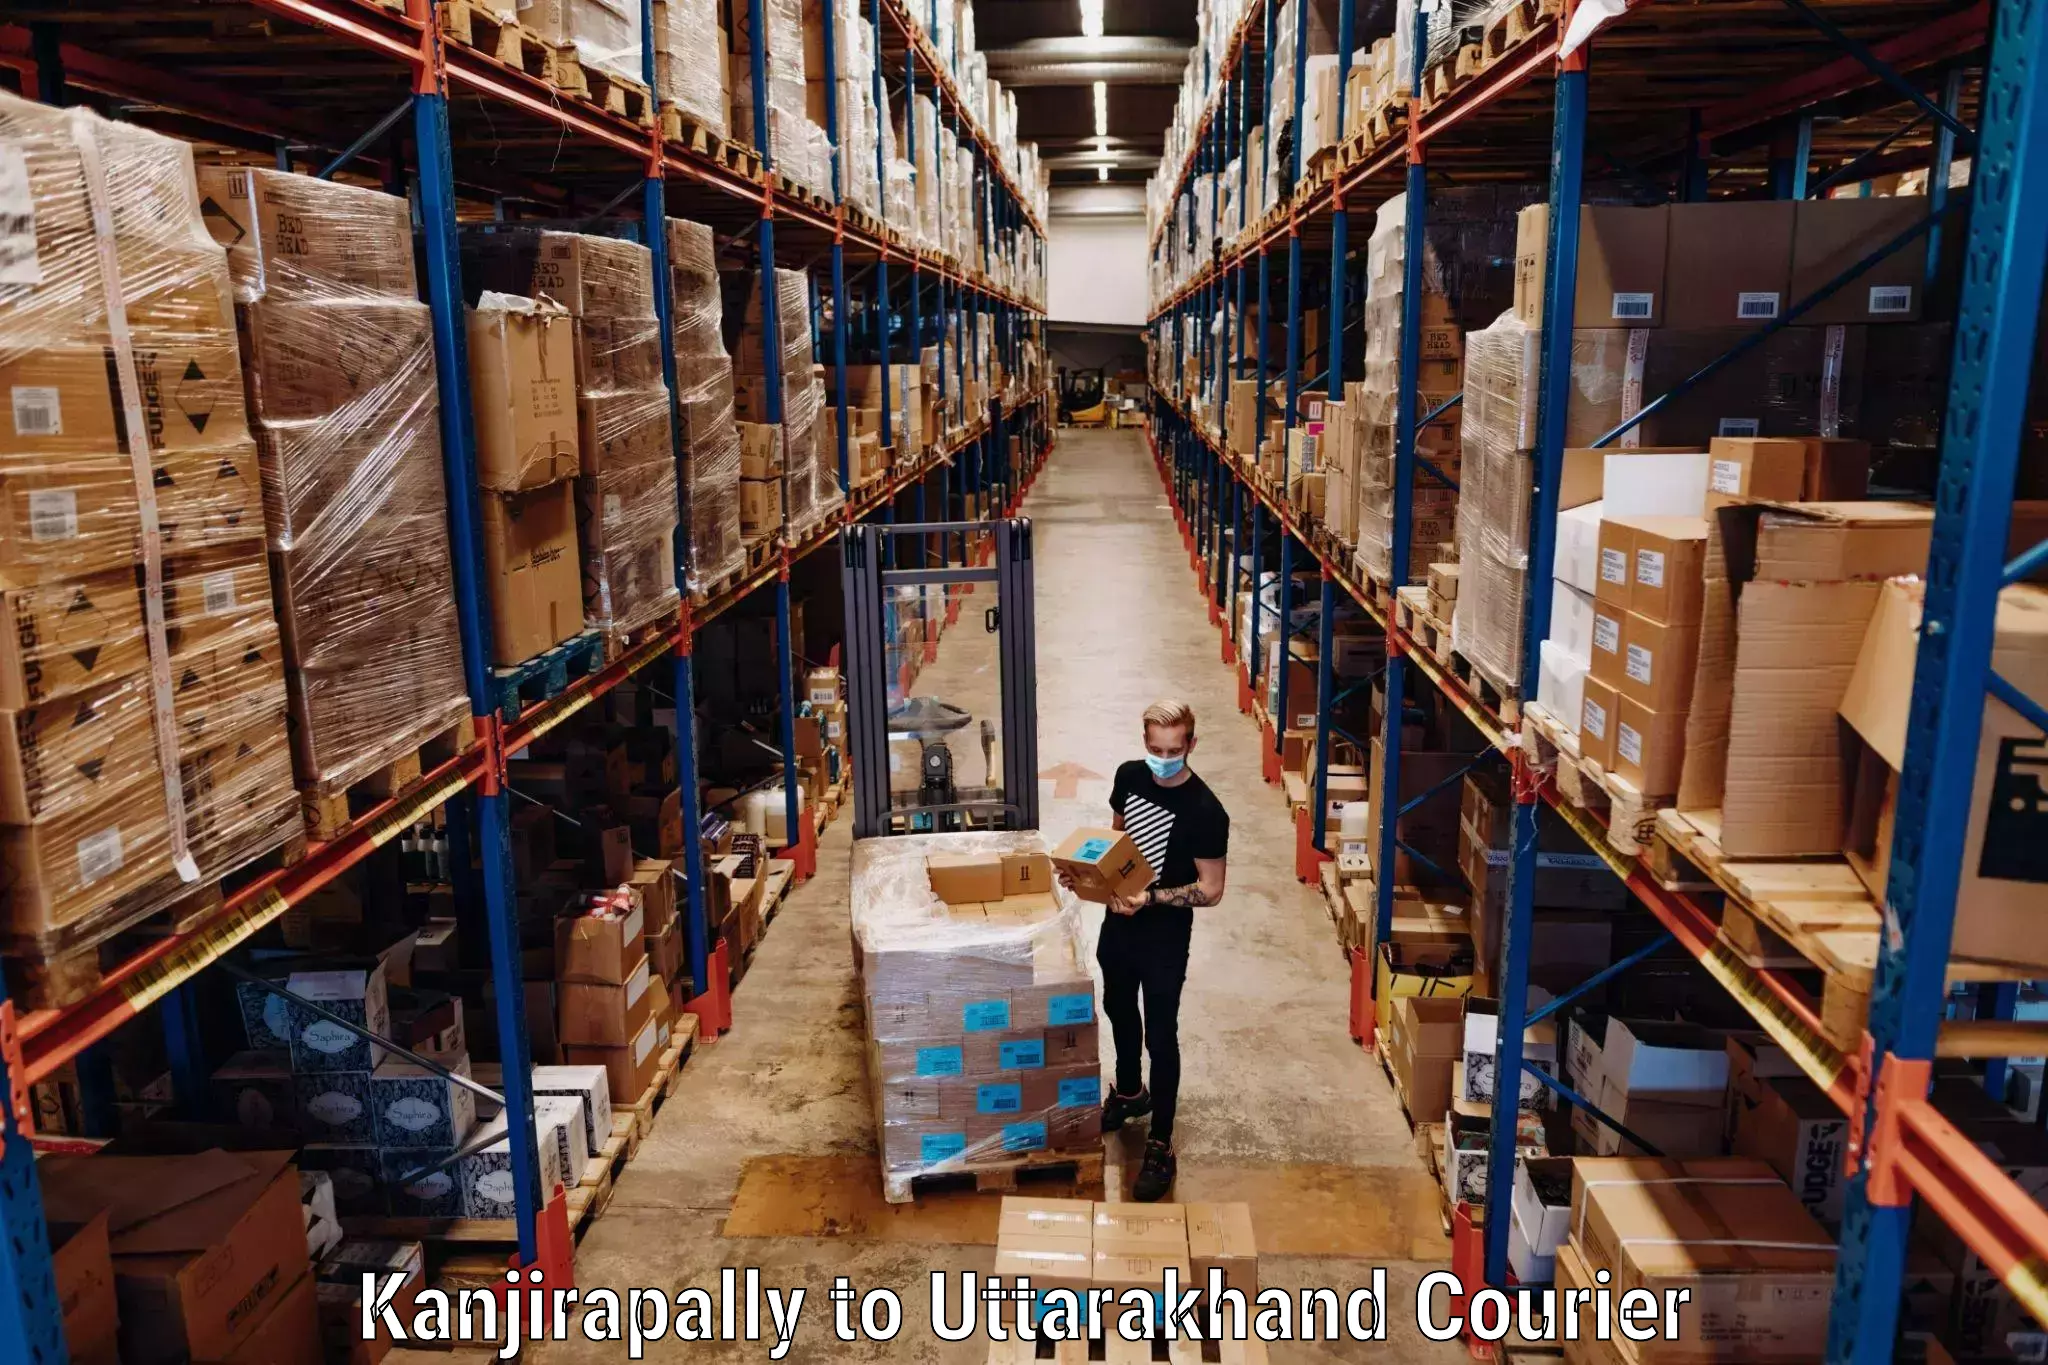 Baggage shipping experts Kanjirapally to Uttarakhand